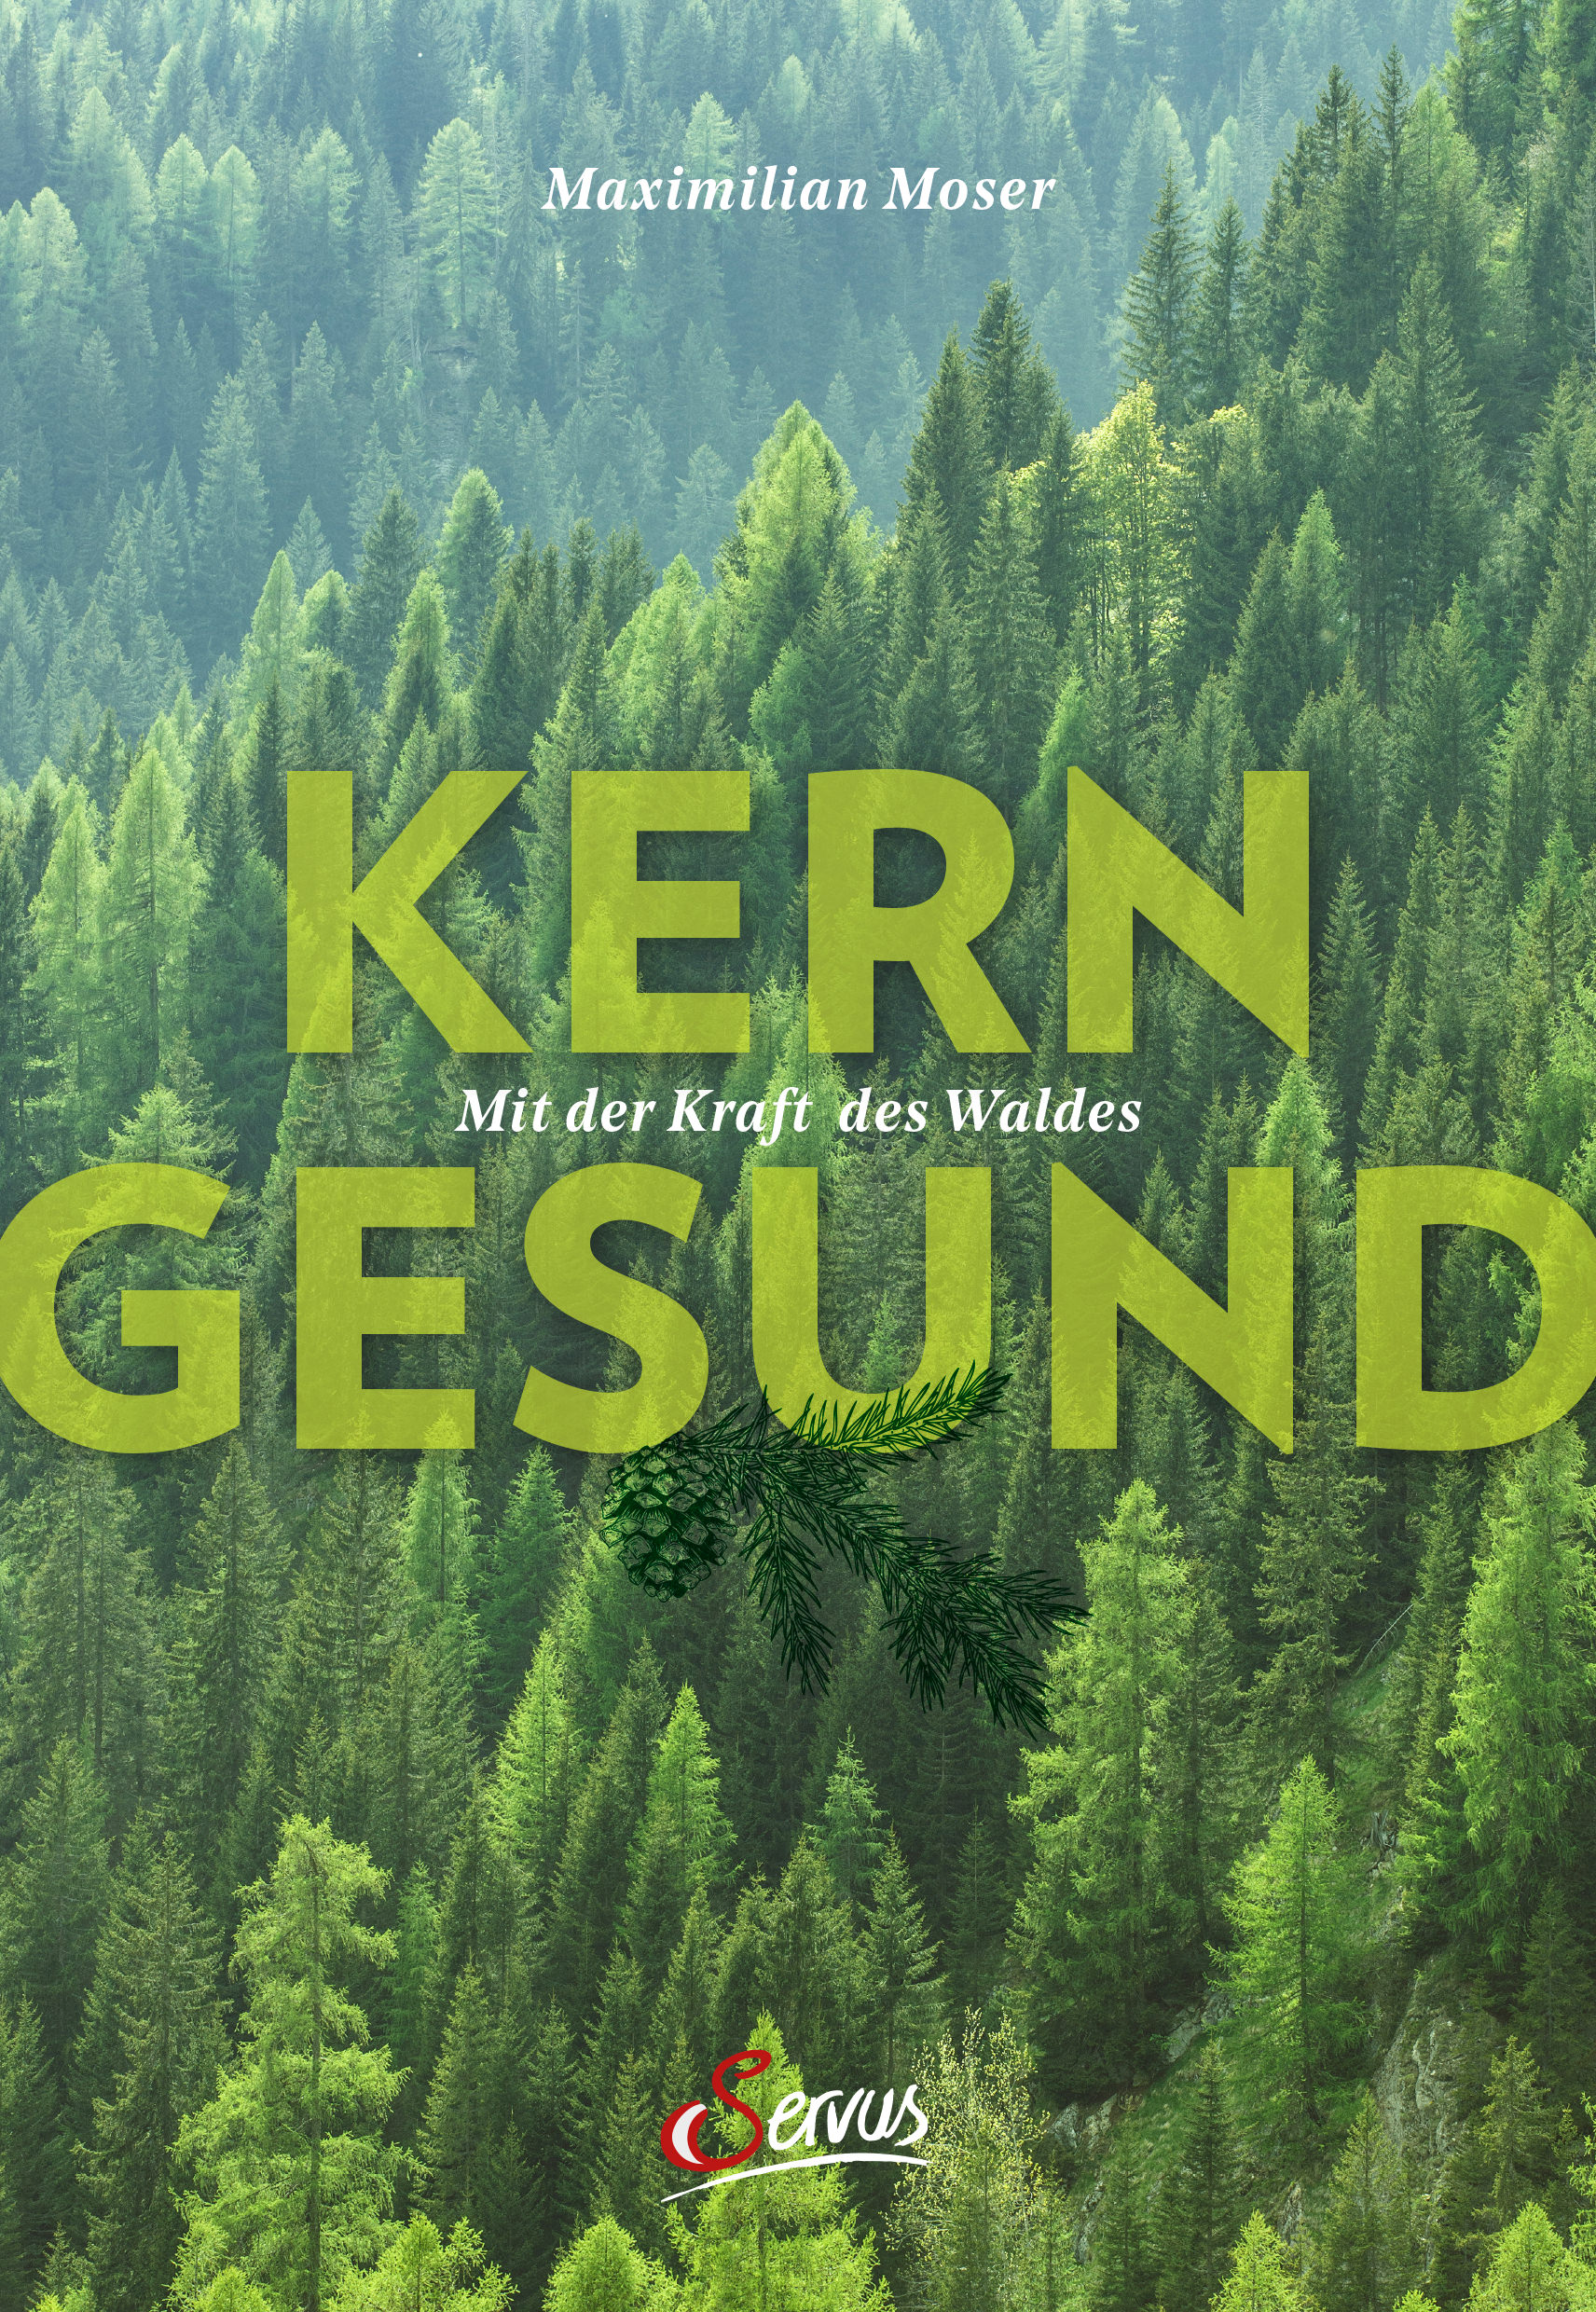 Buchcover: Maximilian Moser: Kerngesund mit der Kraft des Waldes